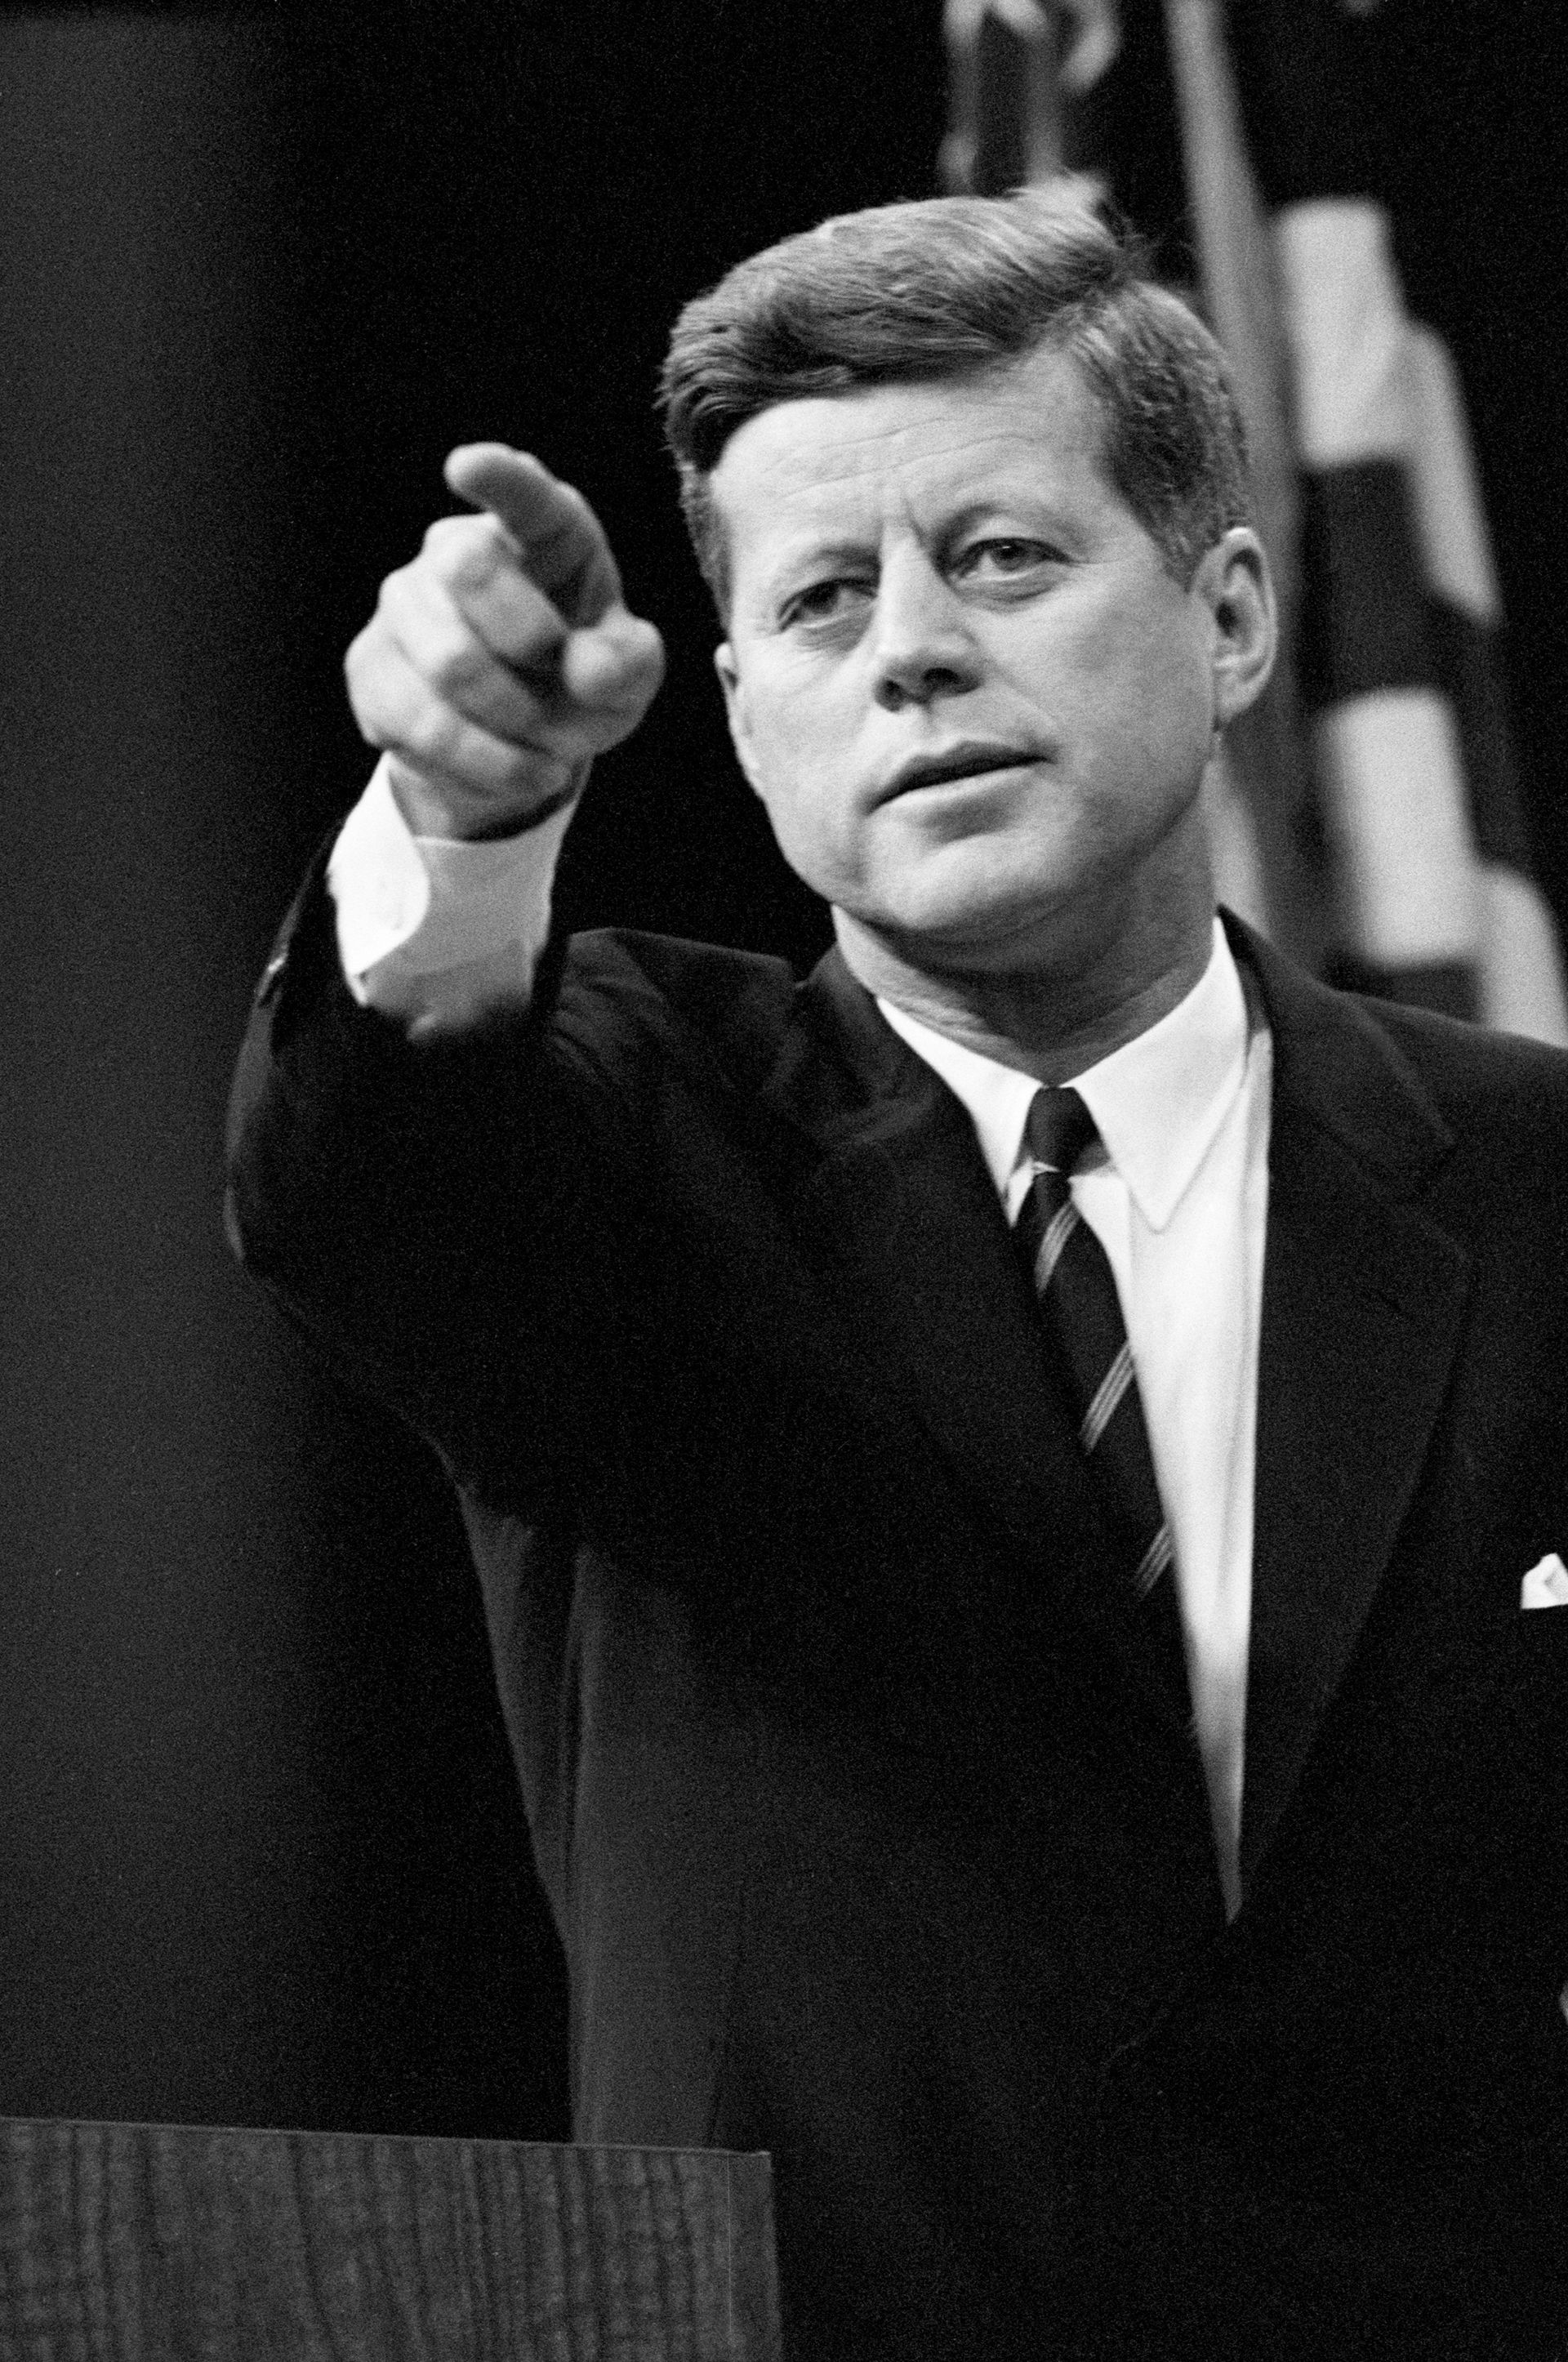 El presidente John F. Kennedy ganó su campaña presidencial prometiendo eliminar la “brecha de los misiles” entre Estados Unidos y la Unión Soviética.